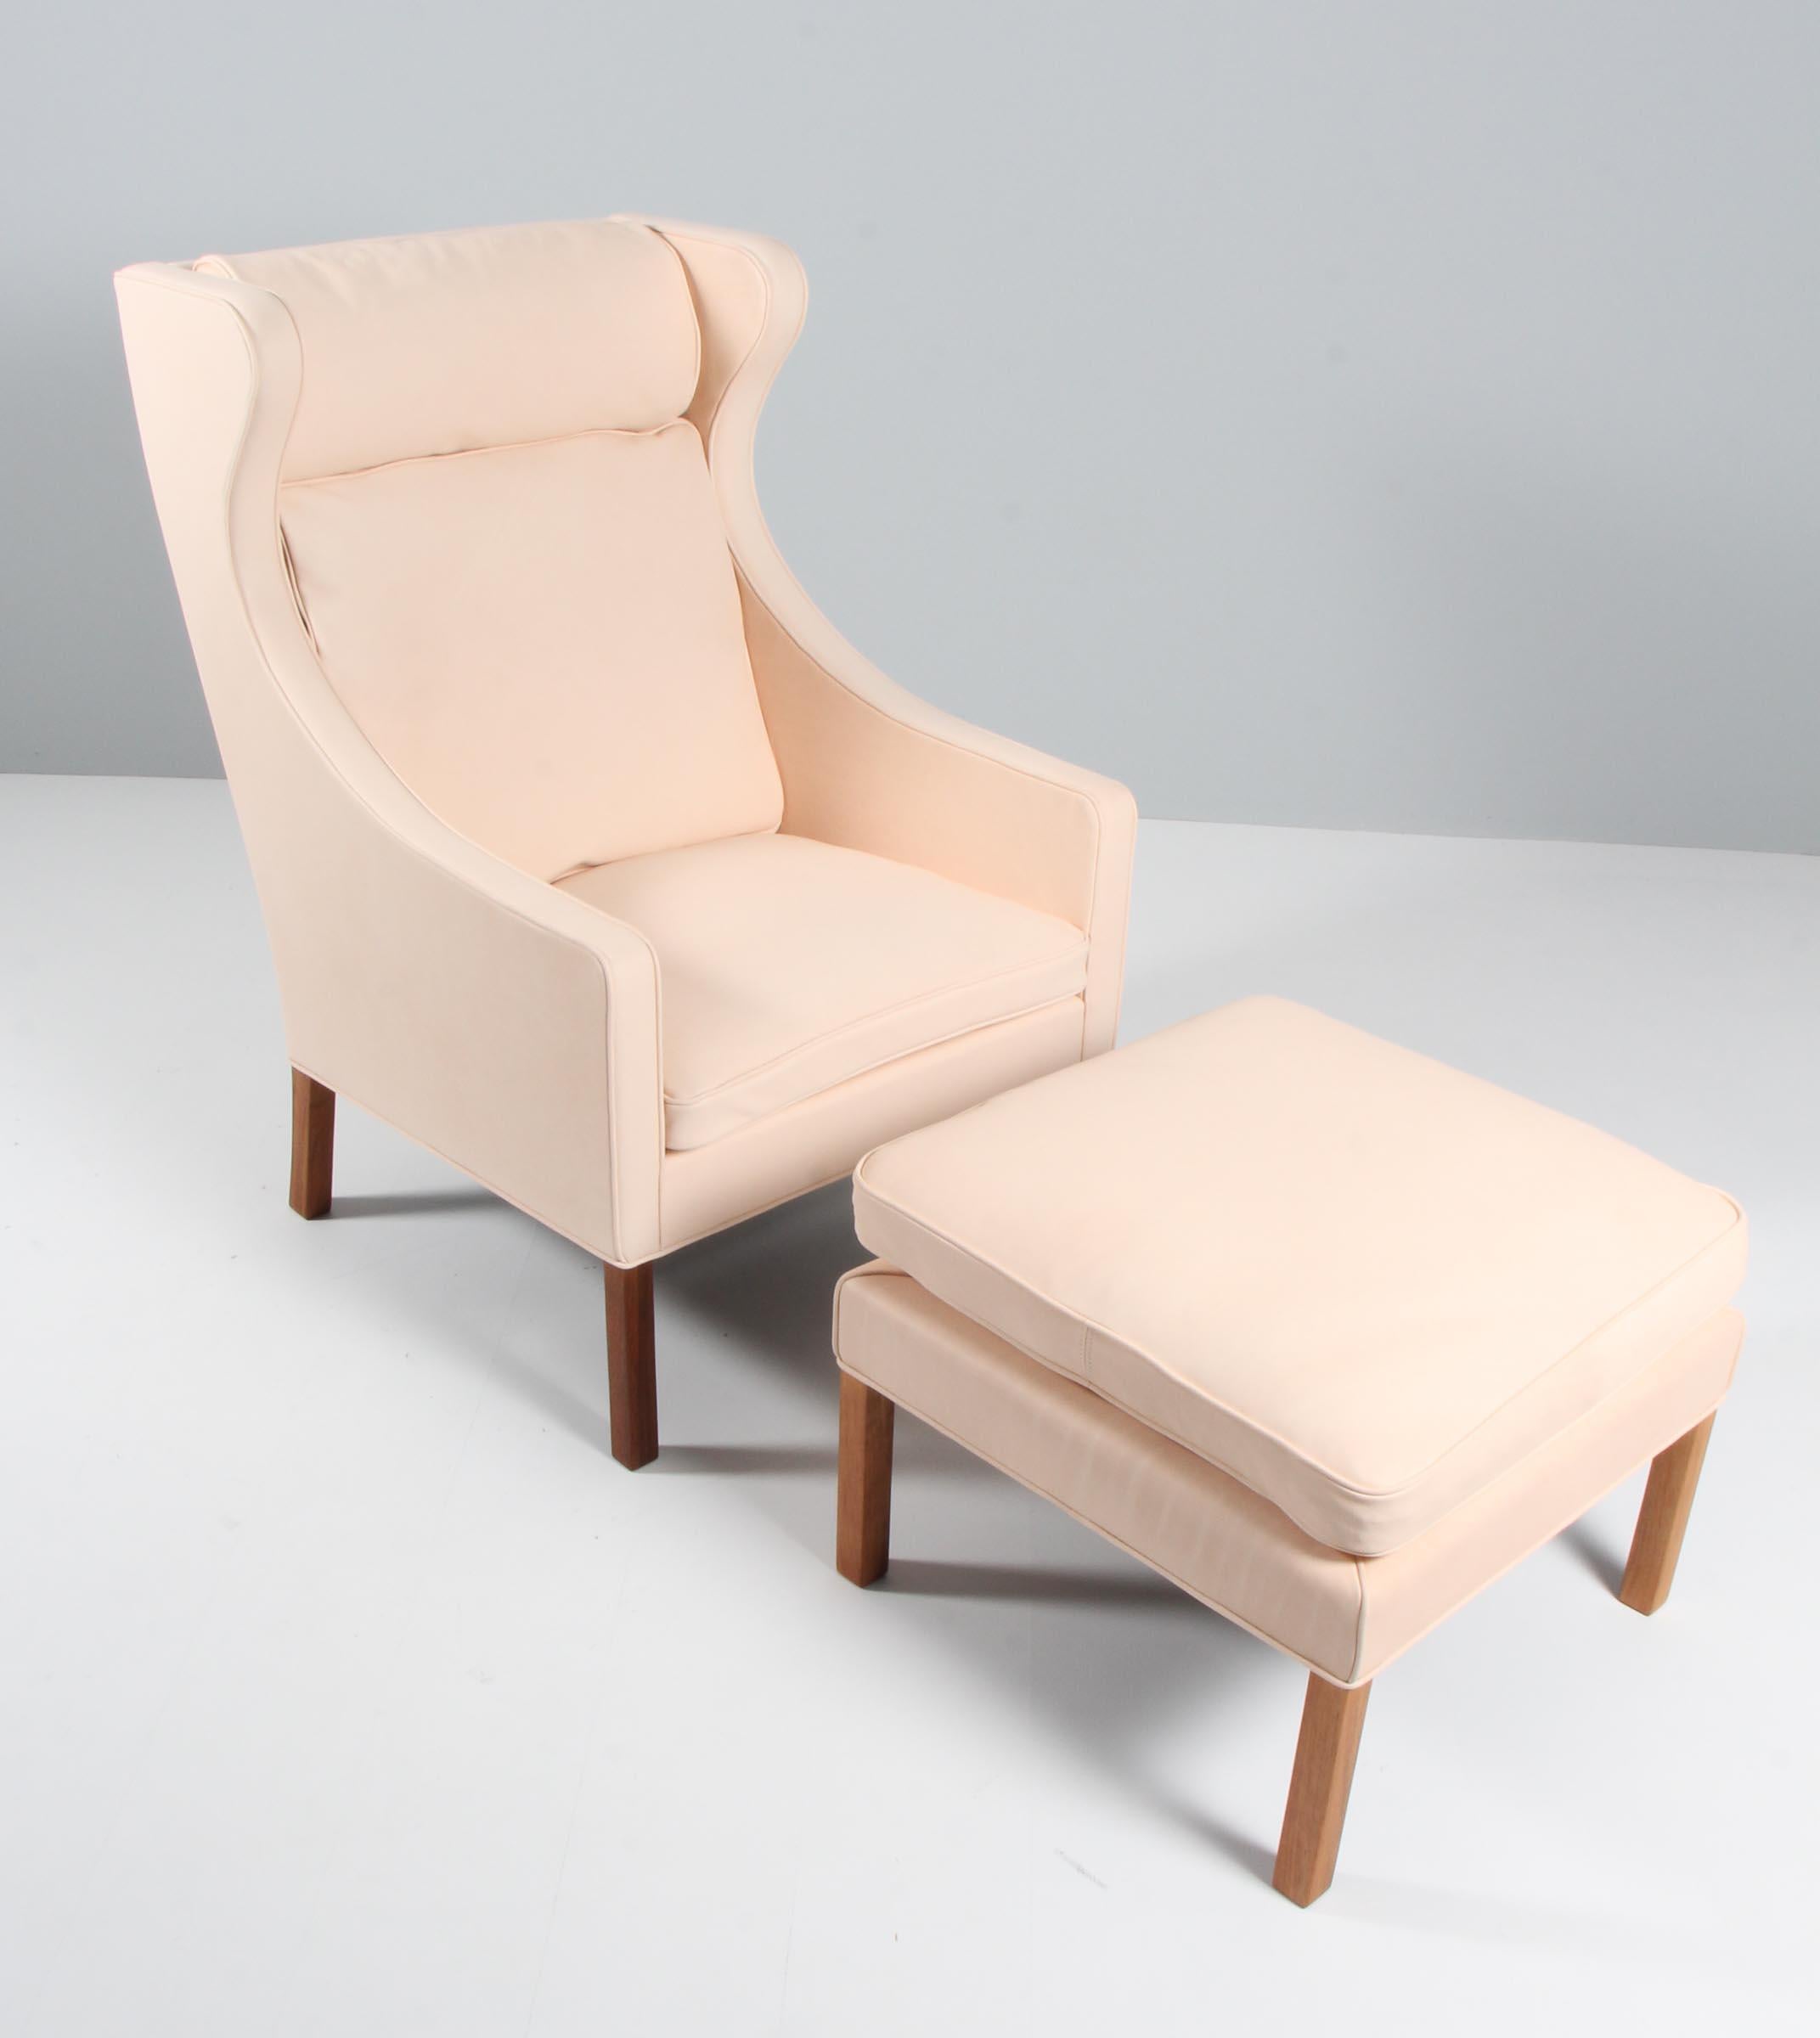 Chaise à oreilles Børge Mogensen avec ottoman nouvellement recouverte de cuir naturel végétal.

Pieds en teck.

Modèle 2204 + 2292, fabriqué par Fredericia Furniture.